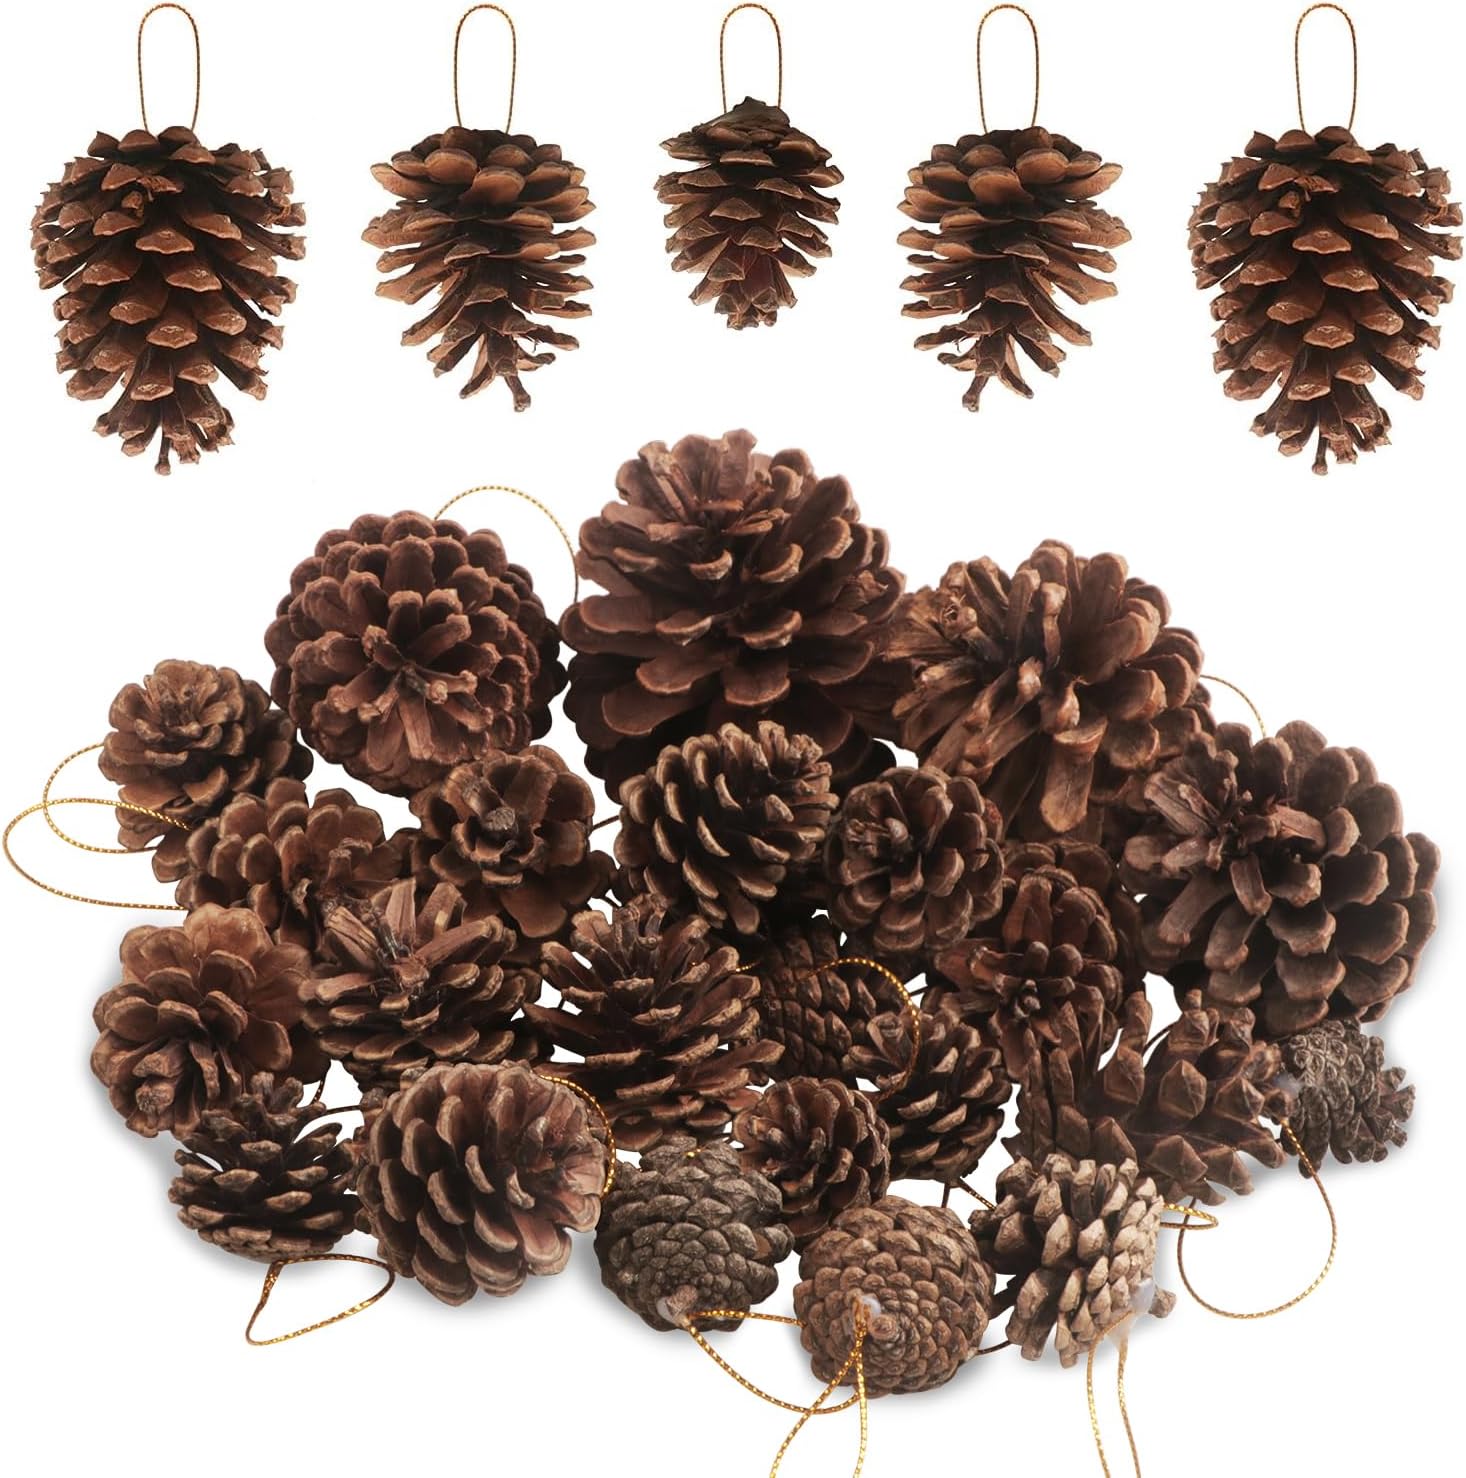 Natural Pine Cone Ornaments